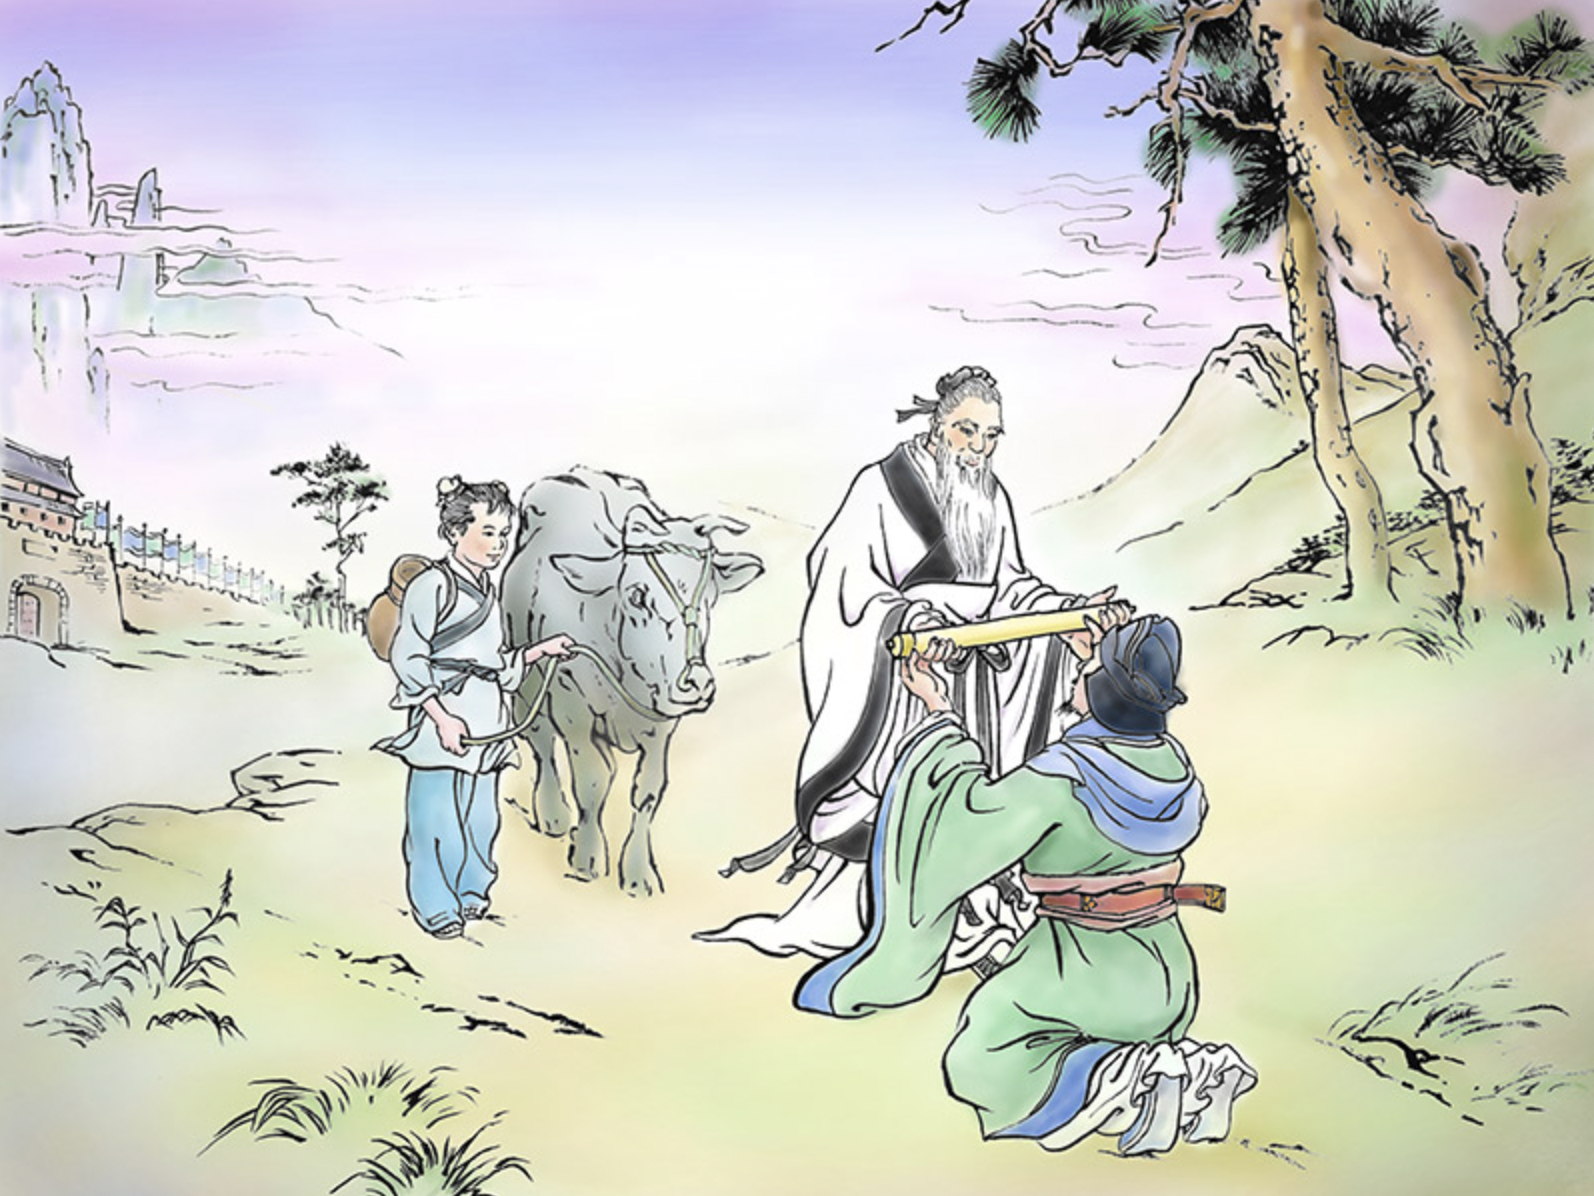 Octroyer le Tao - L’histoire de Lao-Tseu le vieux maître chinois, fondateur du taoïsme